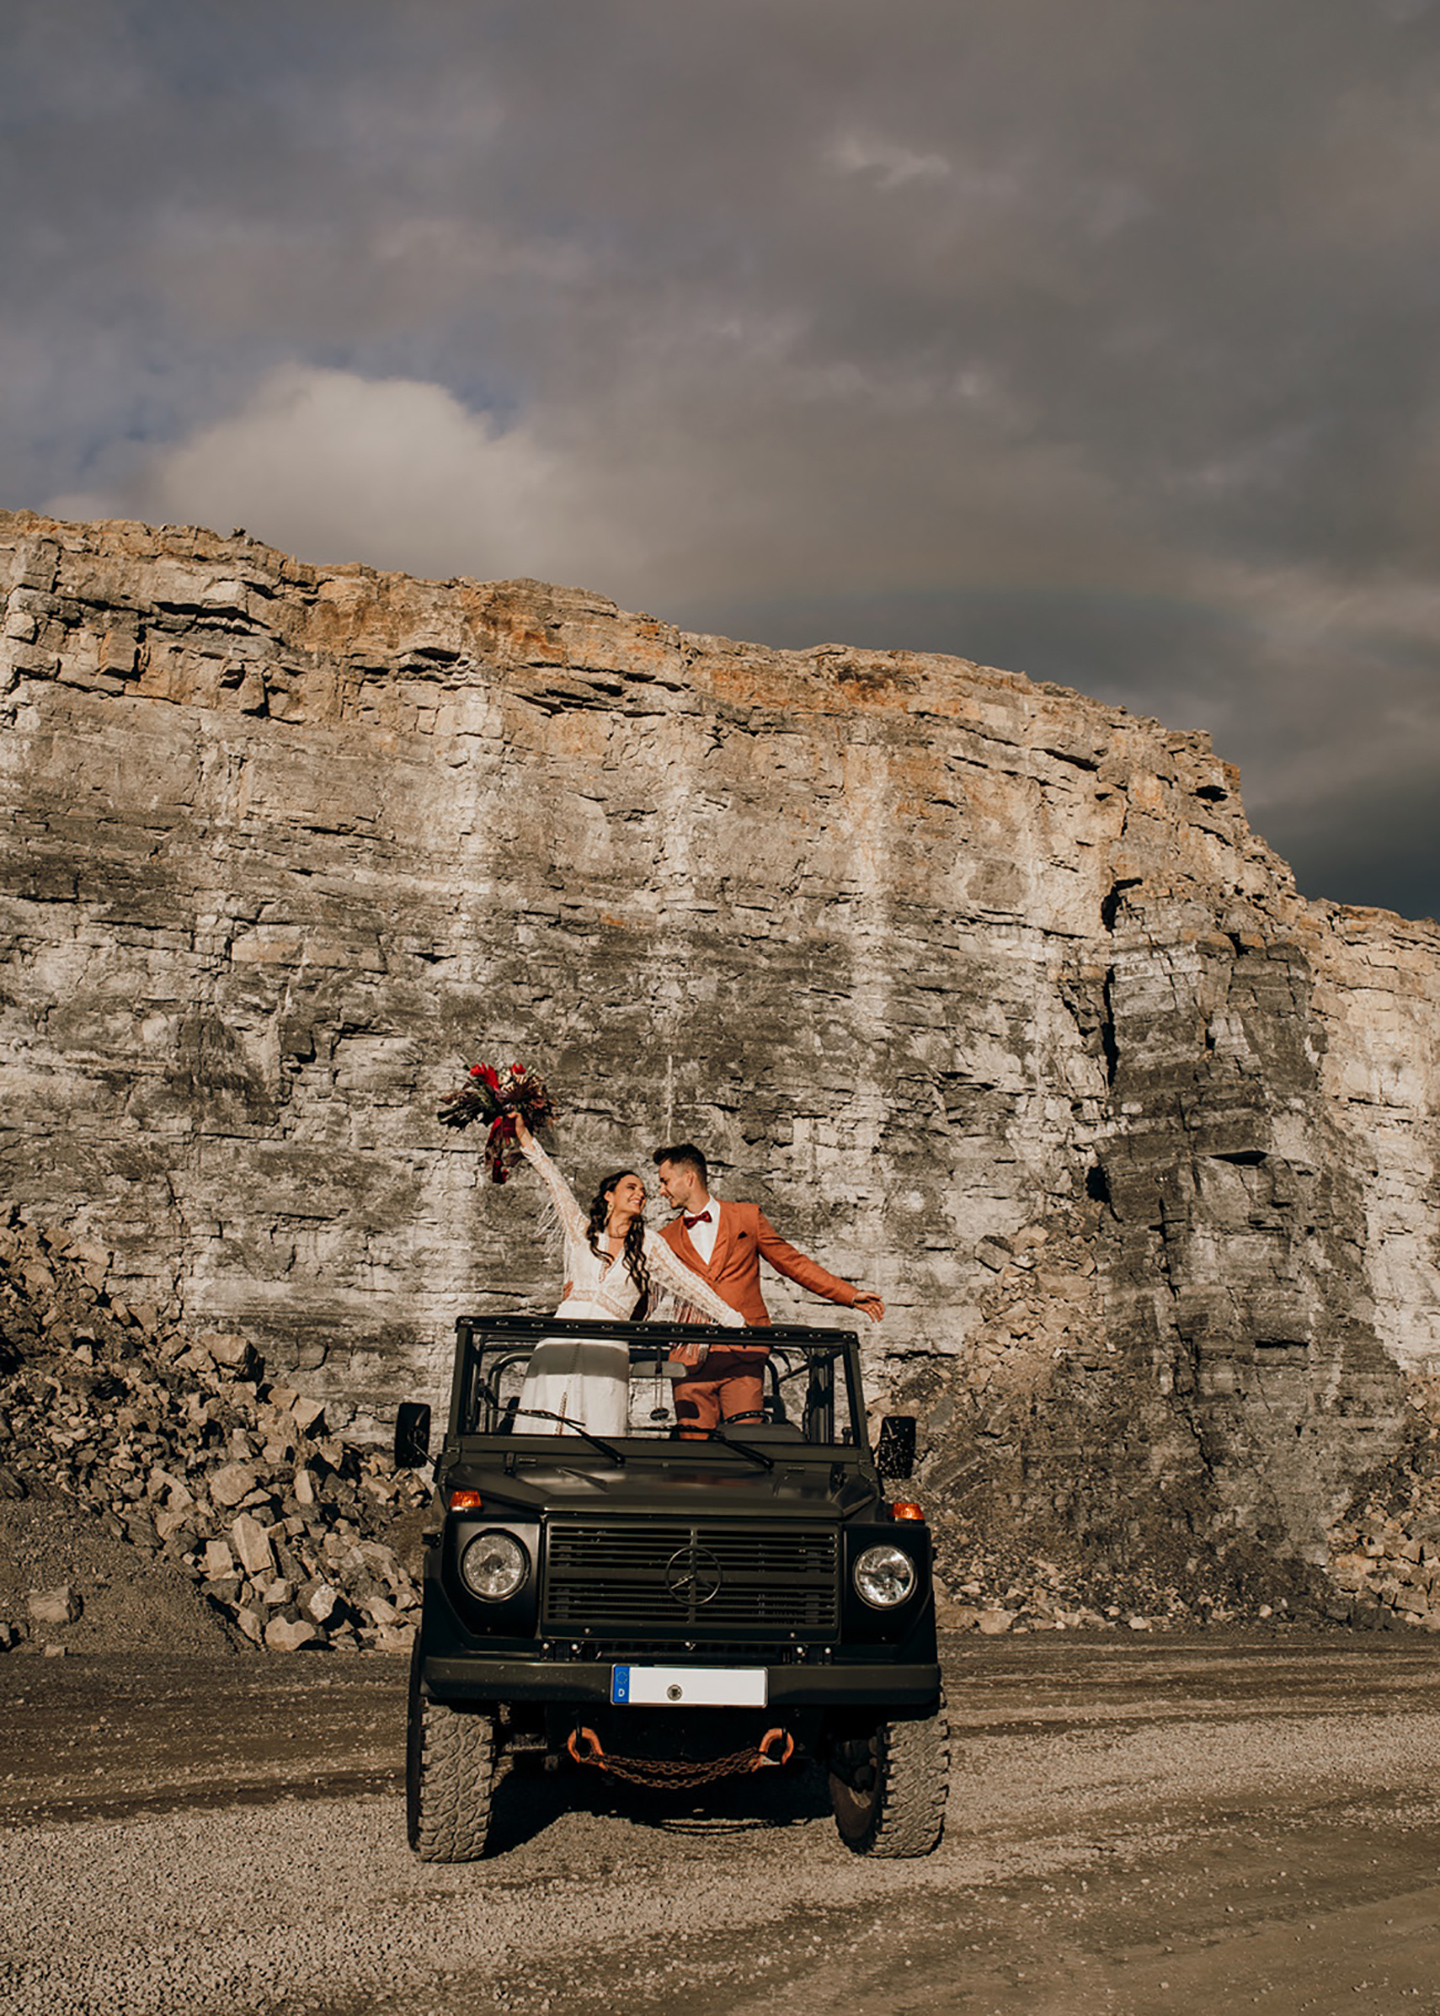 Die beeindruckende Kulisse des Shootings - ein Steinbruch, im Vordergrund das Brautpaar auf dem Geländewagen, dunkle Wolken und ein Regenbogen hinter ihnen